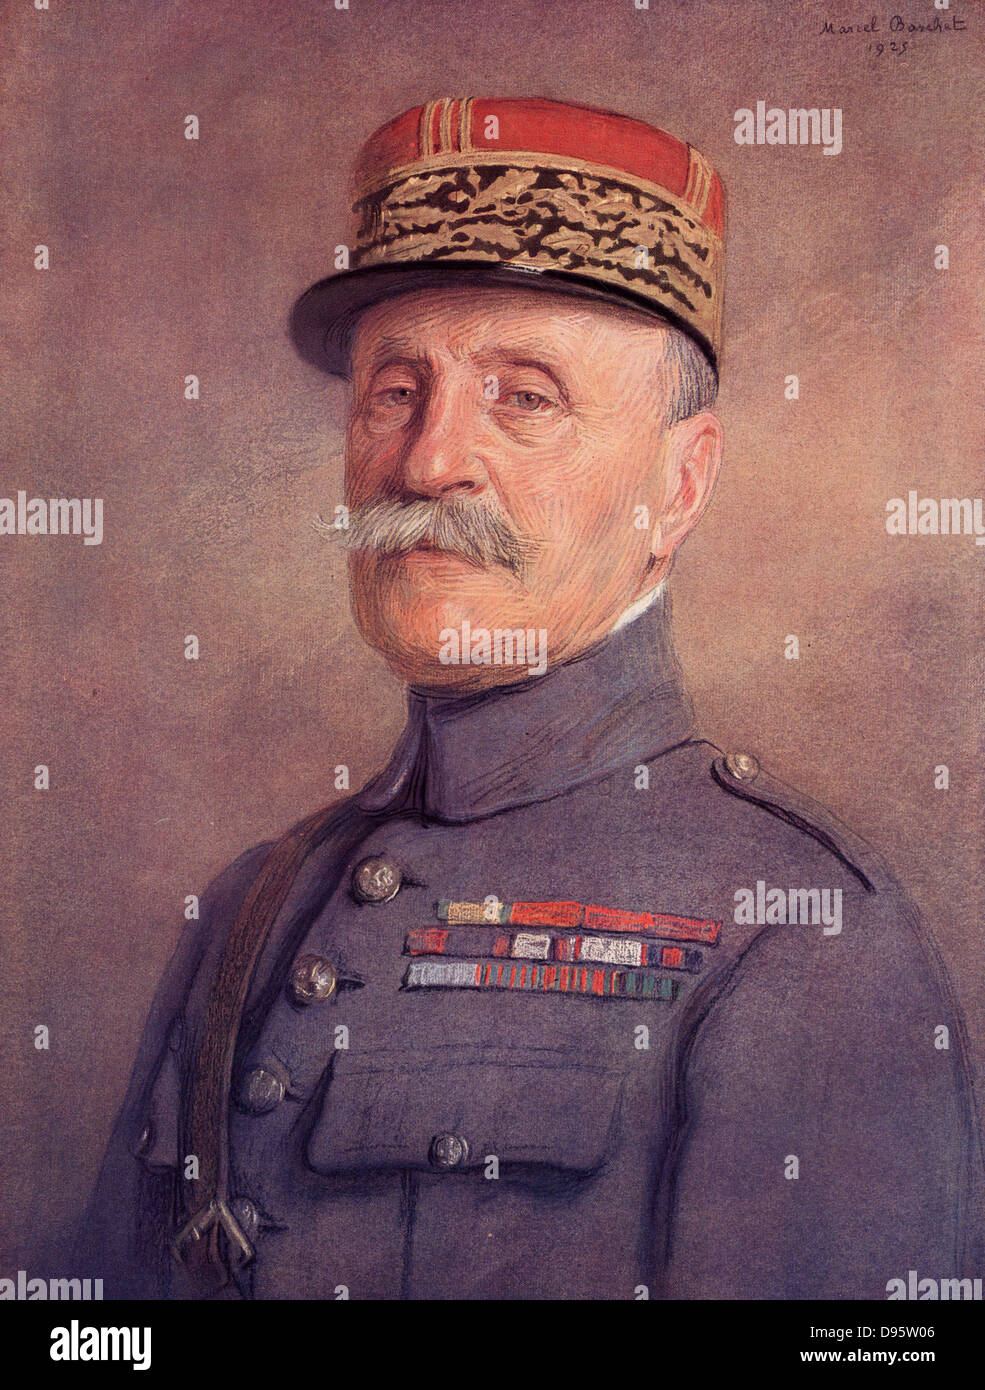 Ferdinand Foch (1851-1929) soldat français qui est entré dans l'armée en 1871. Directeur de l'Ecole de Guerre (1907-1911) L'École de guerre. Dans la première guerre mondiale, il a été nommé Chef d'état-major français en 1918. En mars 1918, il a été nommé commandant suprême des forces alliées. En 1925 comme un Foche Maréchal de France. Banque D'Images